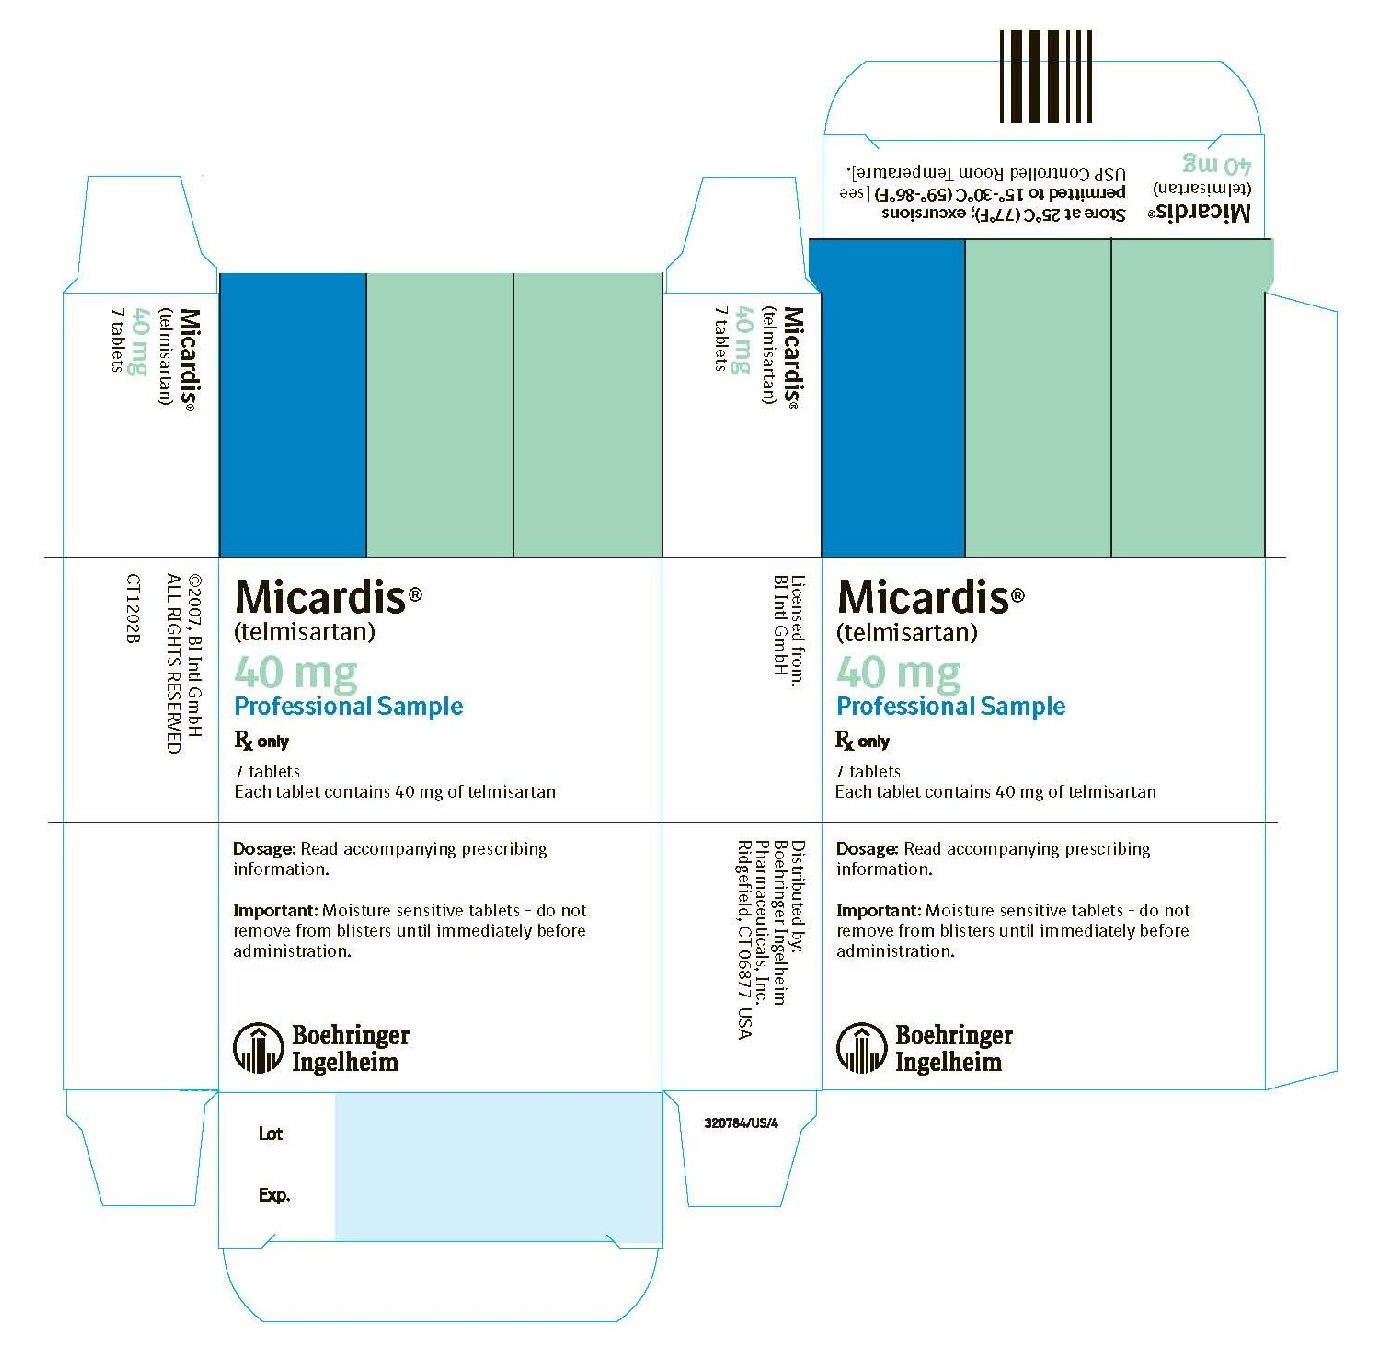 Micardis 40 mg 7 Tablets NDC 0597-0040-70